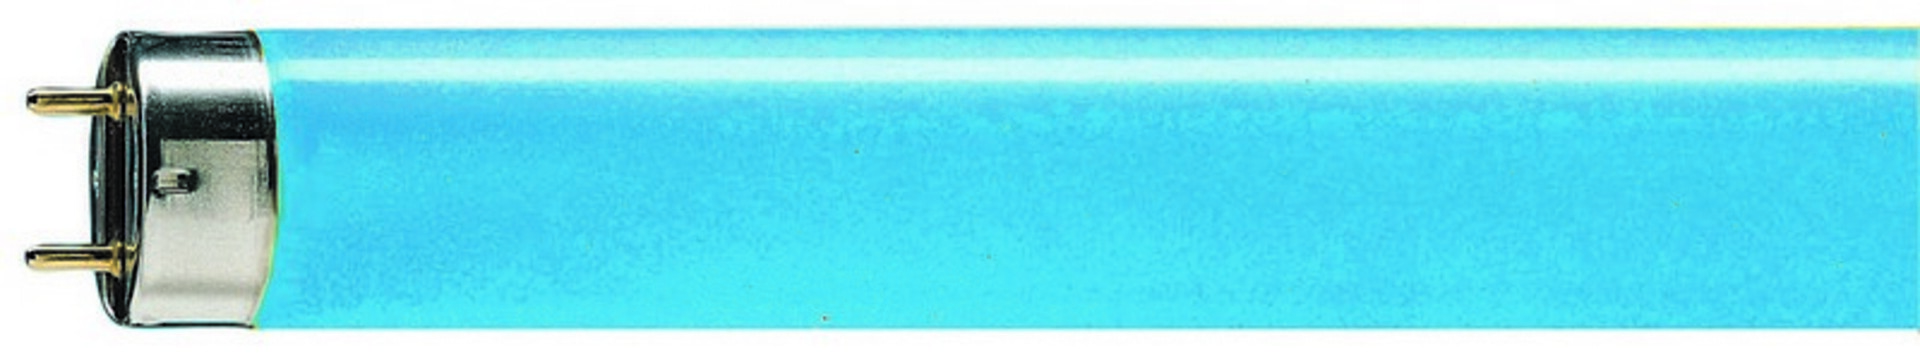 Levně Philips lineární MASTER TL-D 36W/ 18 G13 modrá